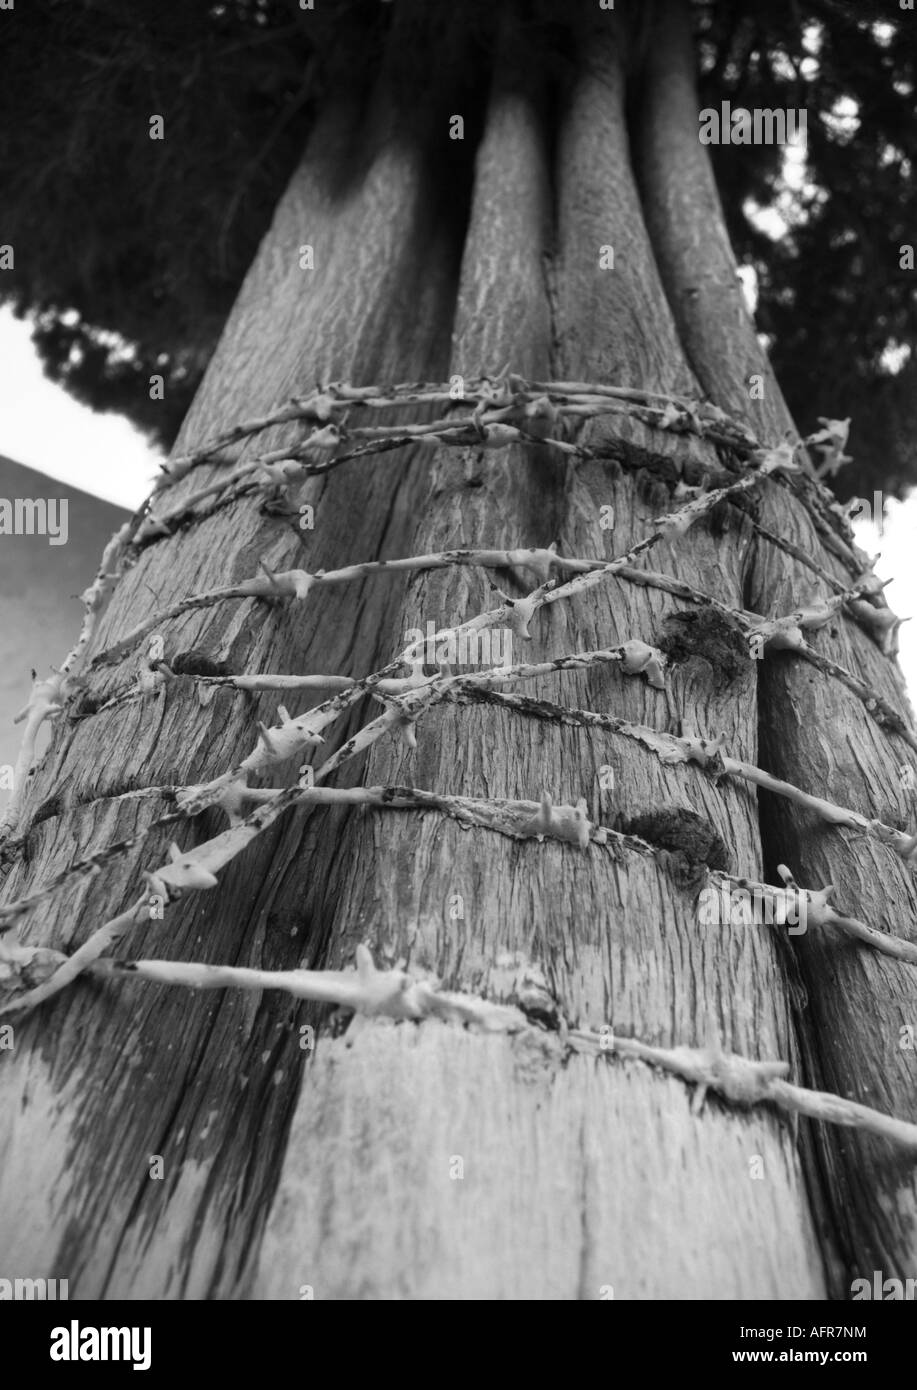 Herida de árbol Imágenes de stock en blanco y negro - Alamy